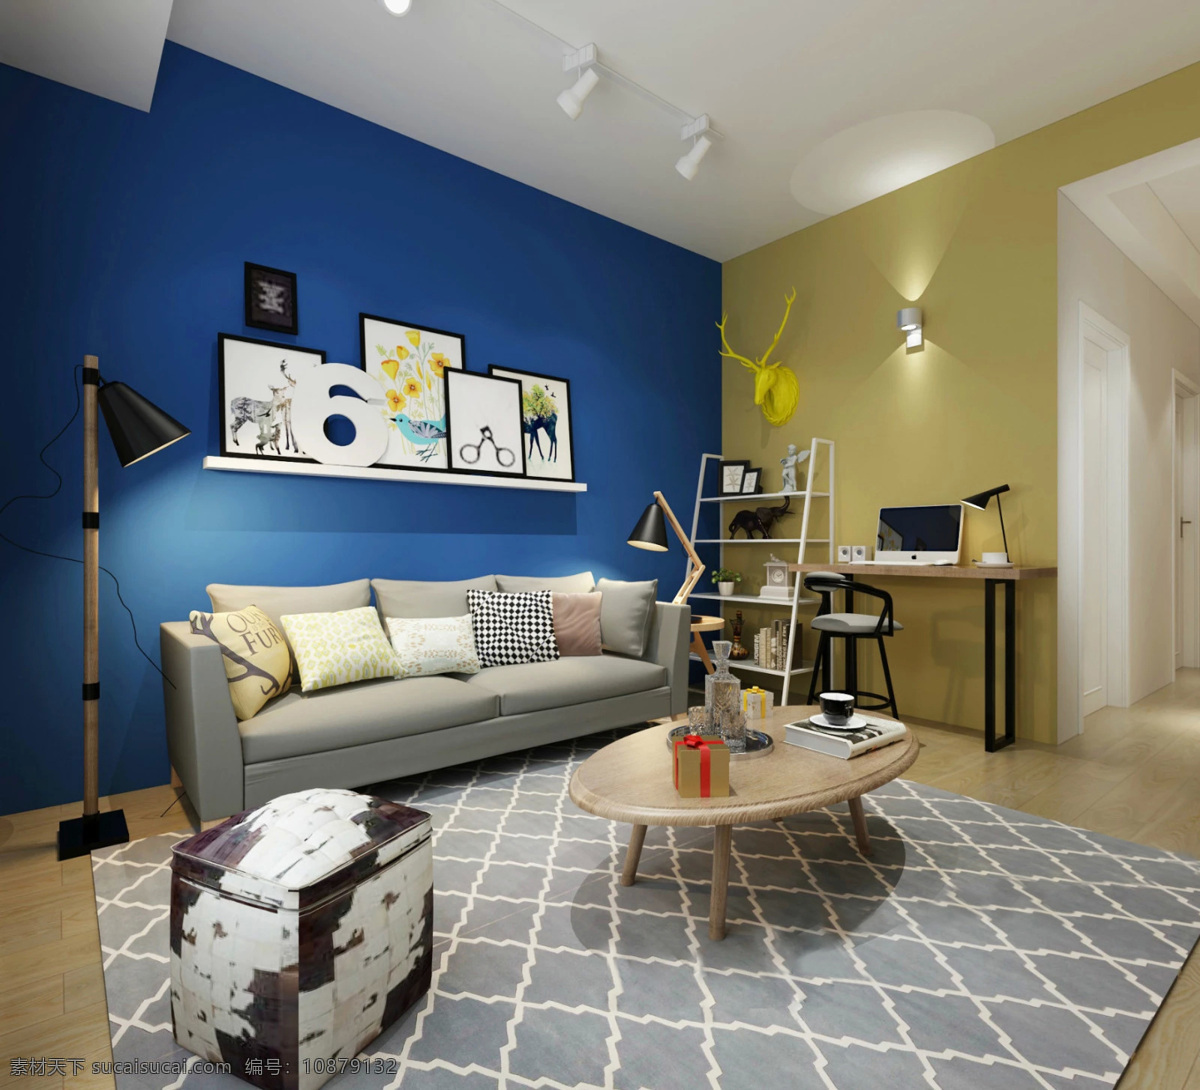 简约 室内 客厅 蓝色 背景 墙 效果图 家居 家居生活 室内设计 家具 装修设计 环境设计 高清 家居大图 蓝色背景墙 沙发 瓷砖